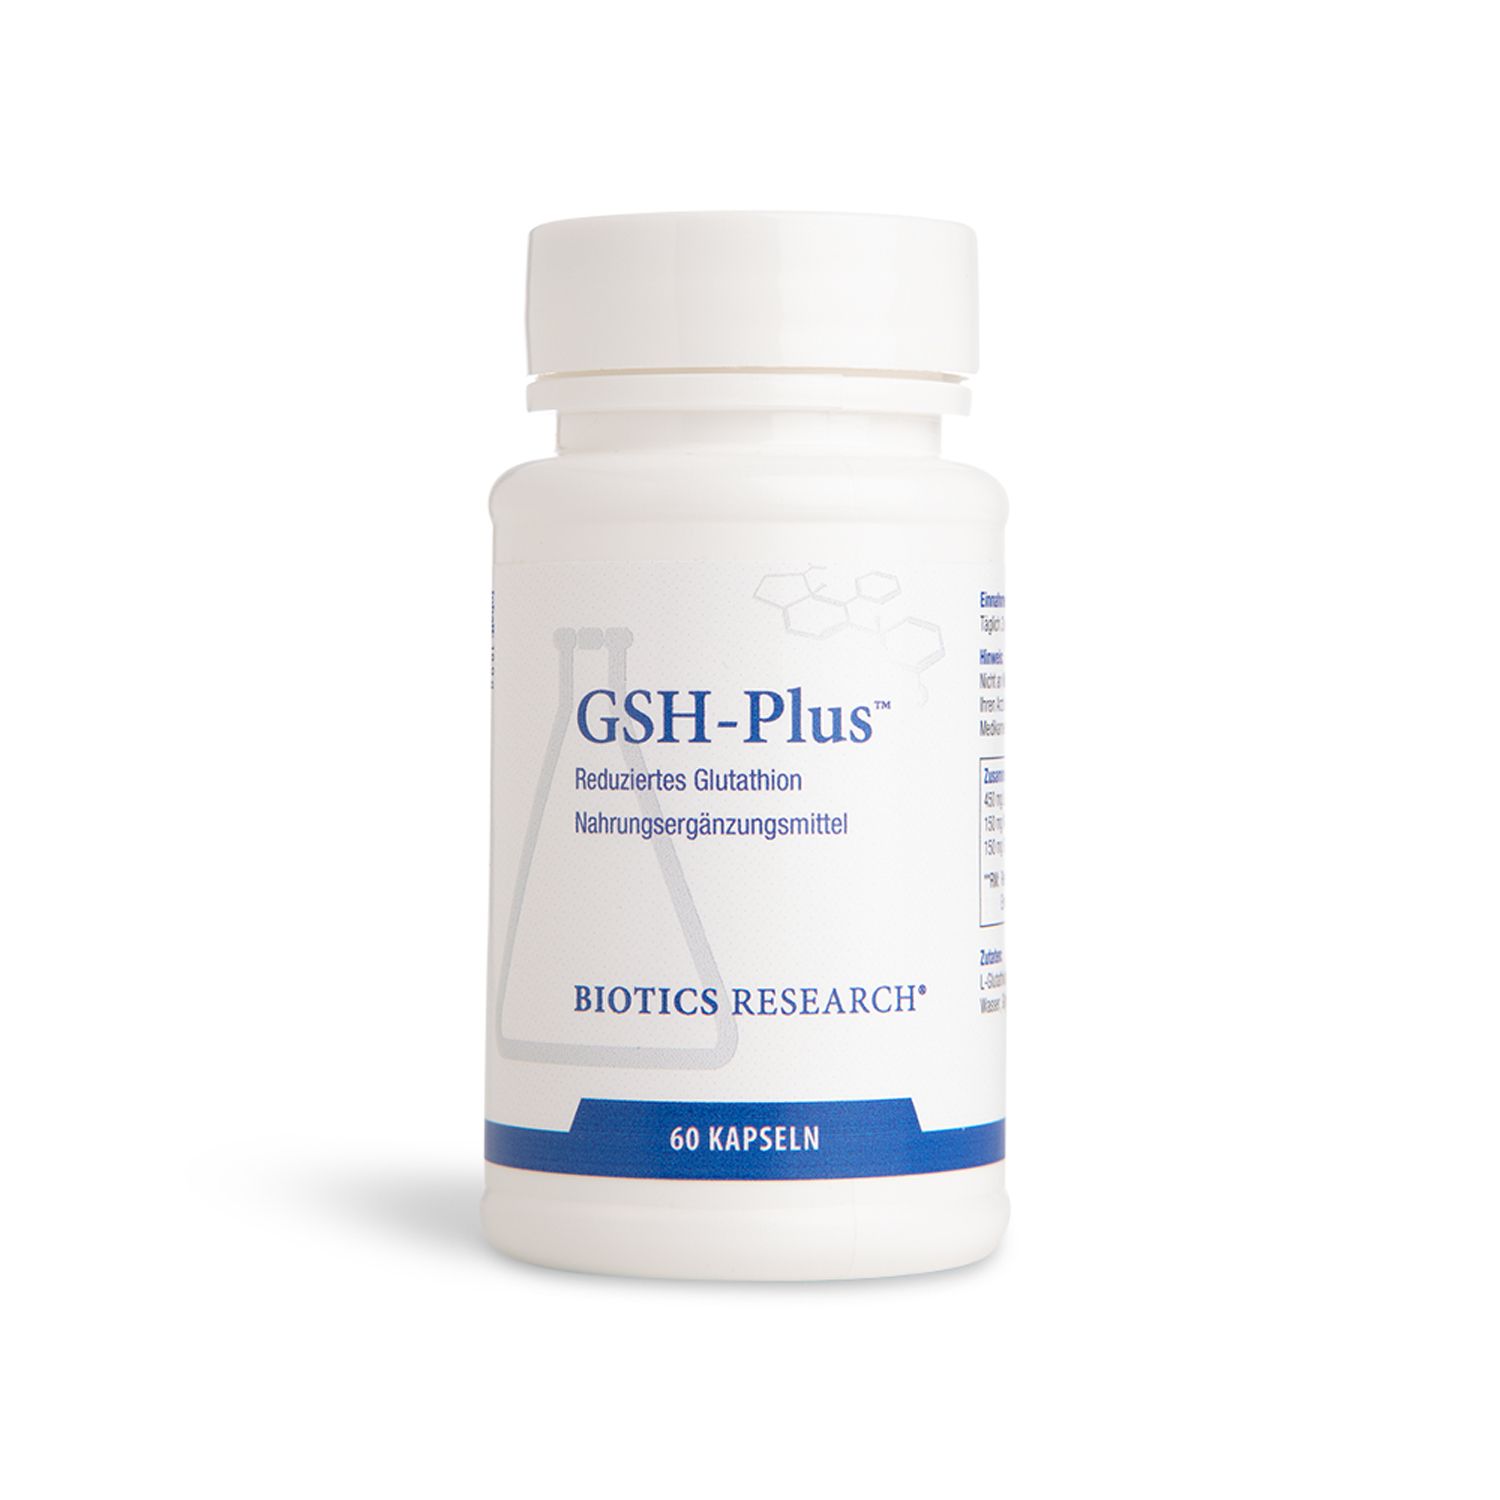 Biotics Research® GSH-Plus™